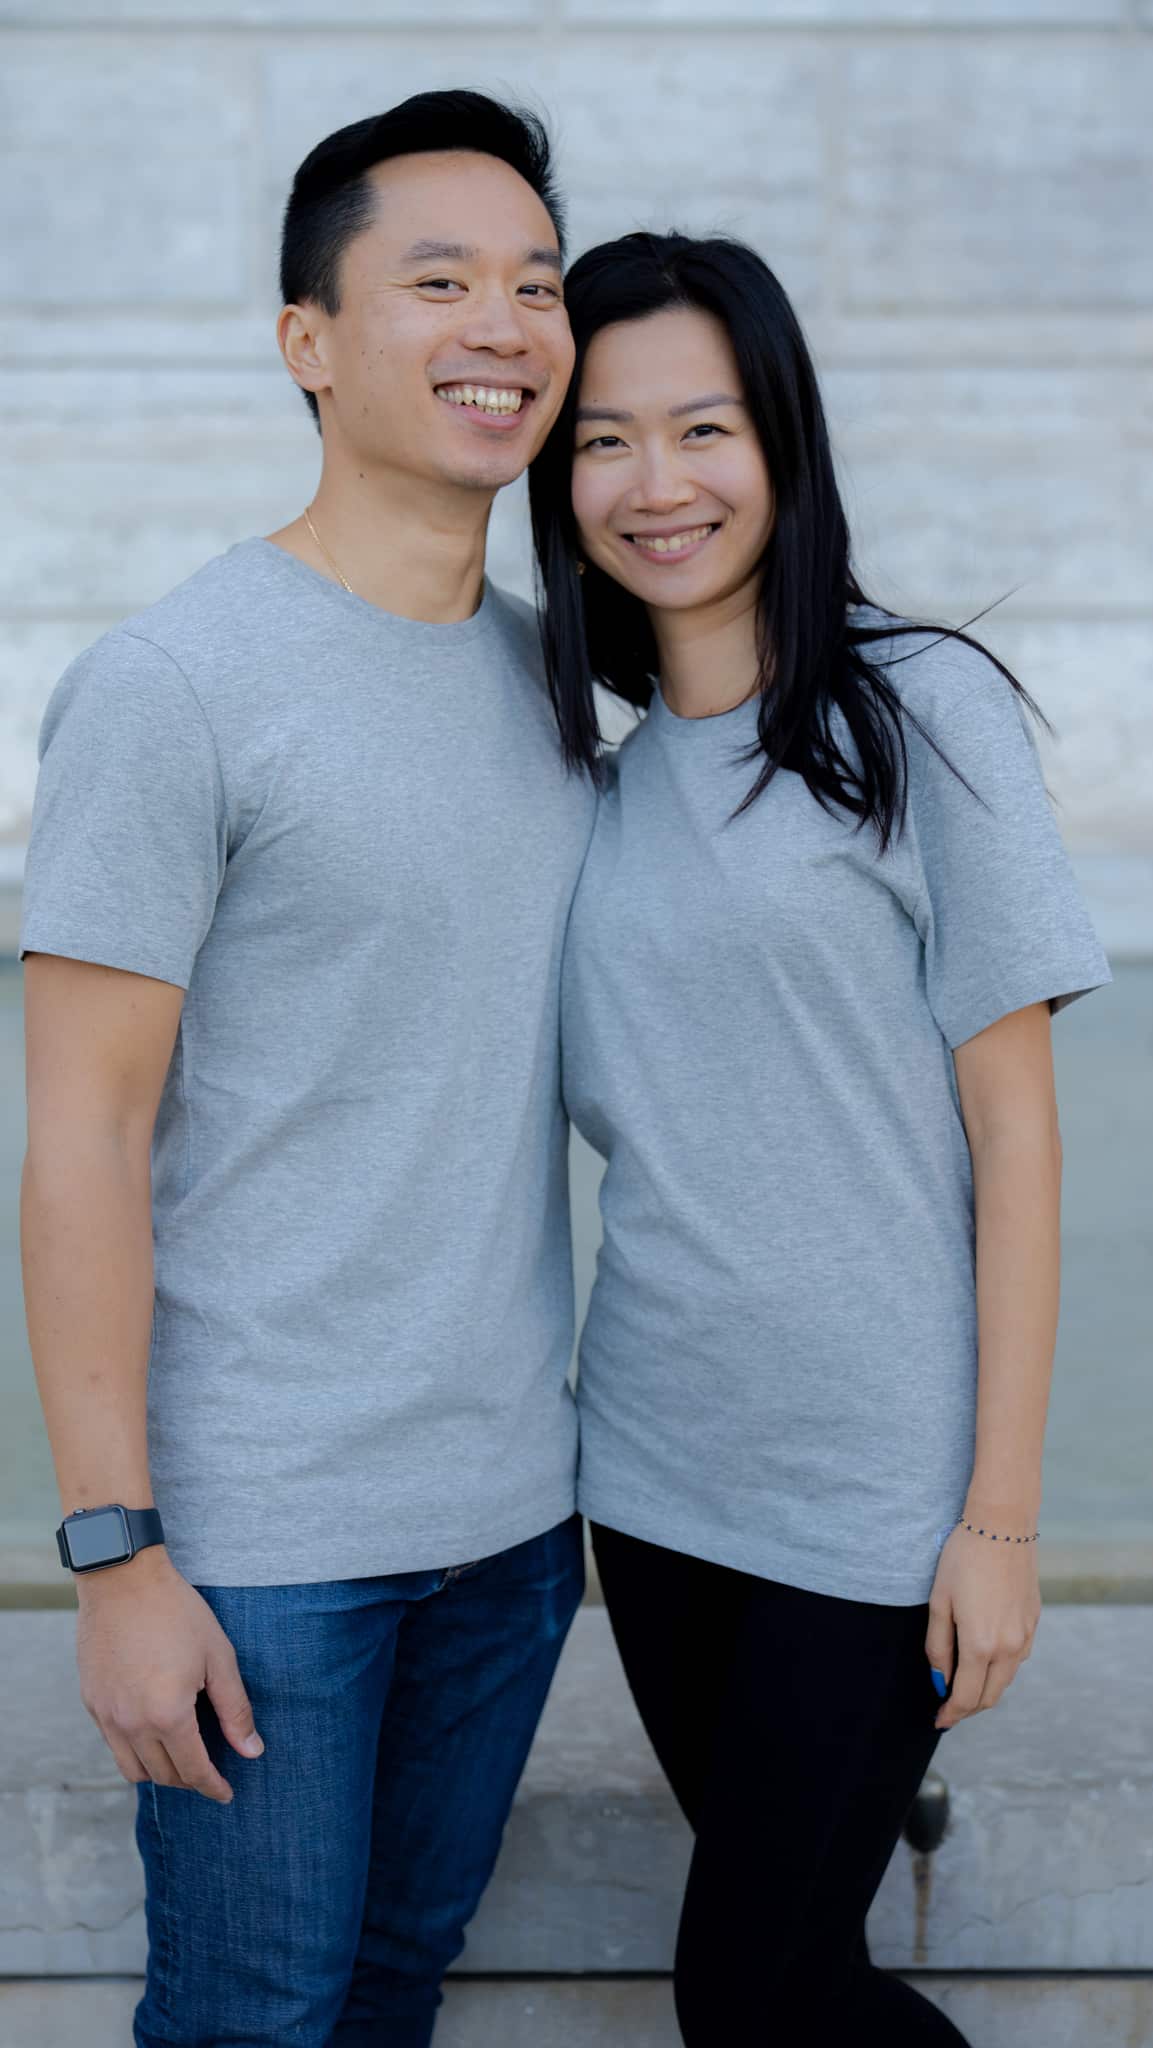 T-shirt mixte gris en coton bio